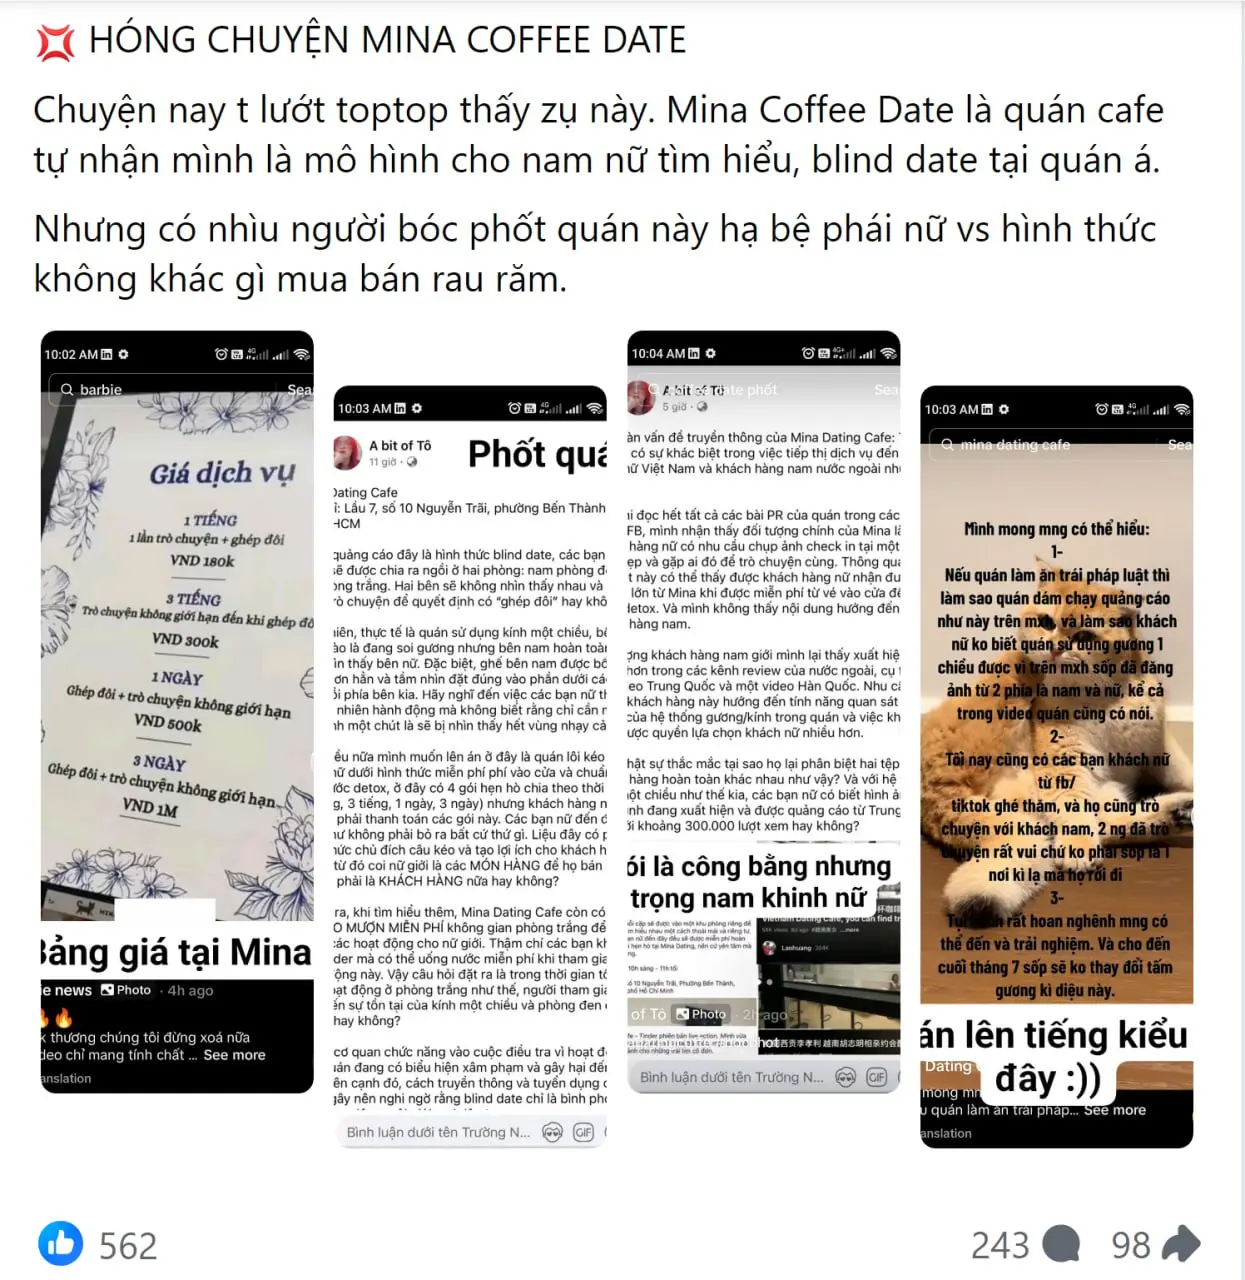 Mina Dating Cafe hoạt động mô hình "Blind Date" bị phốt